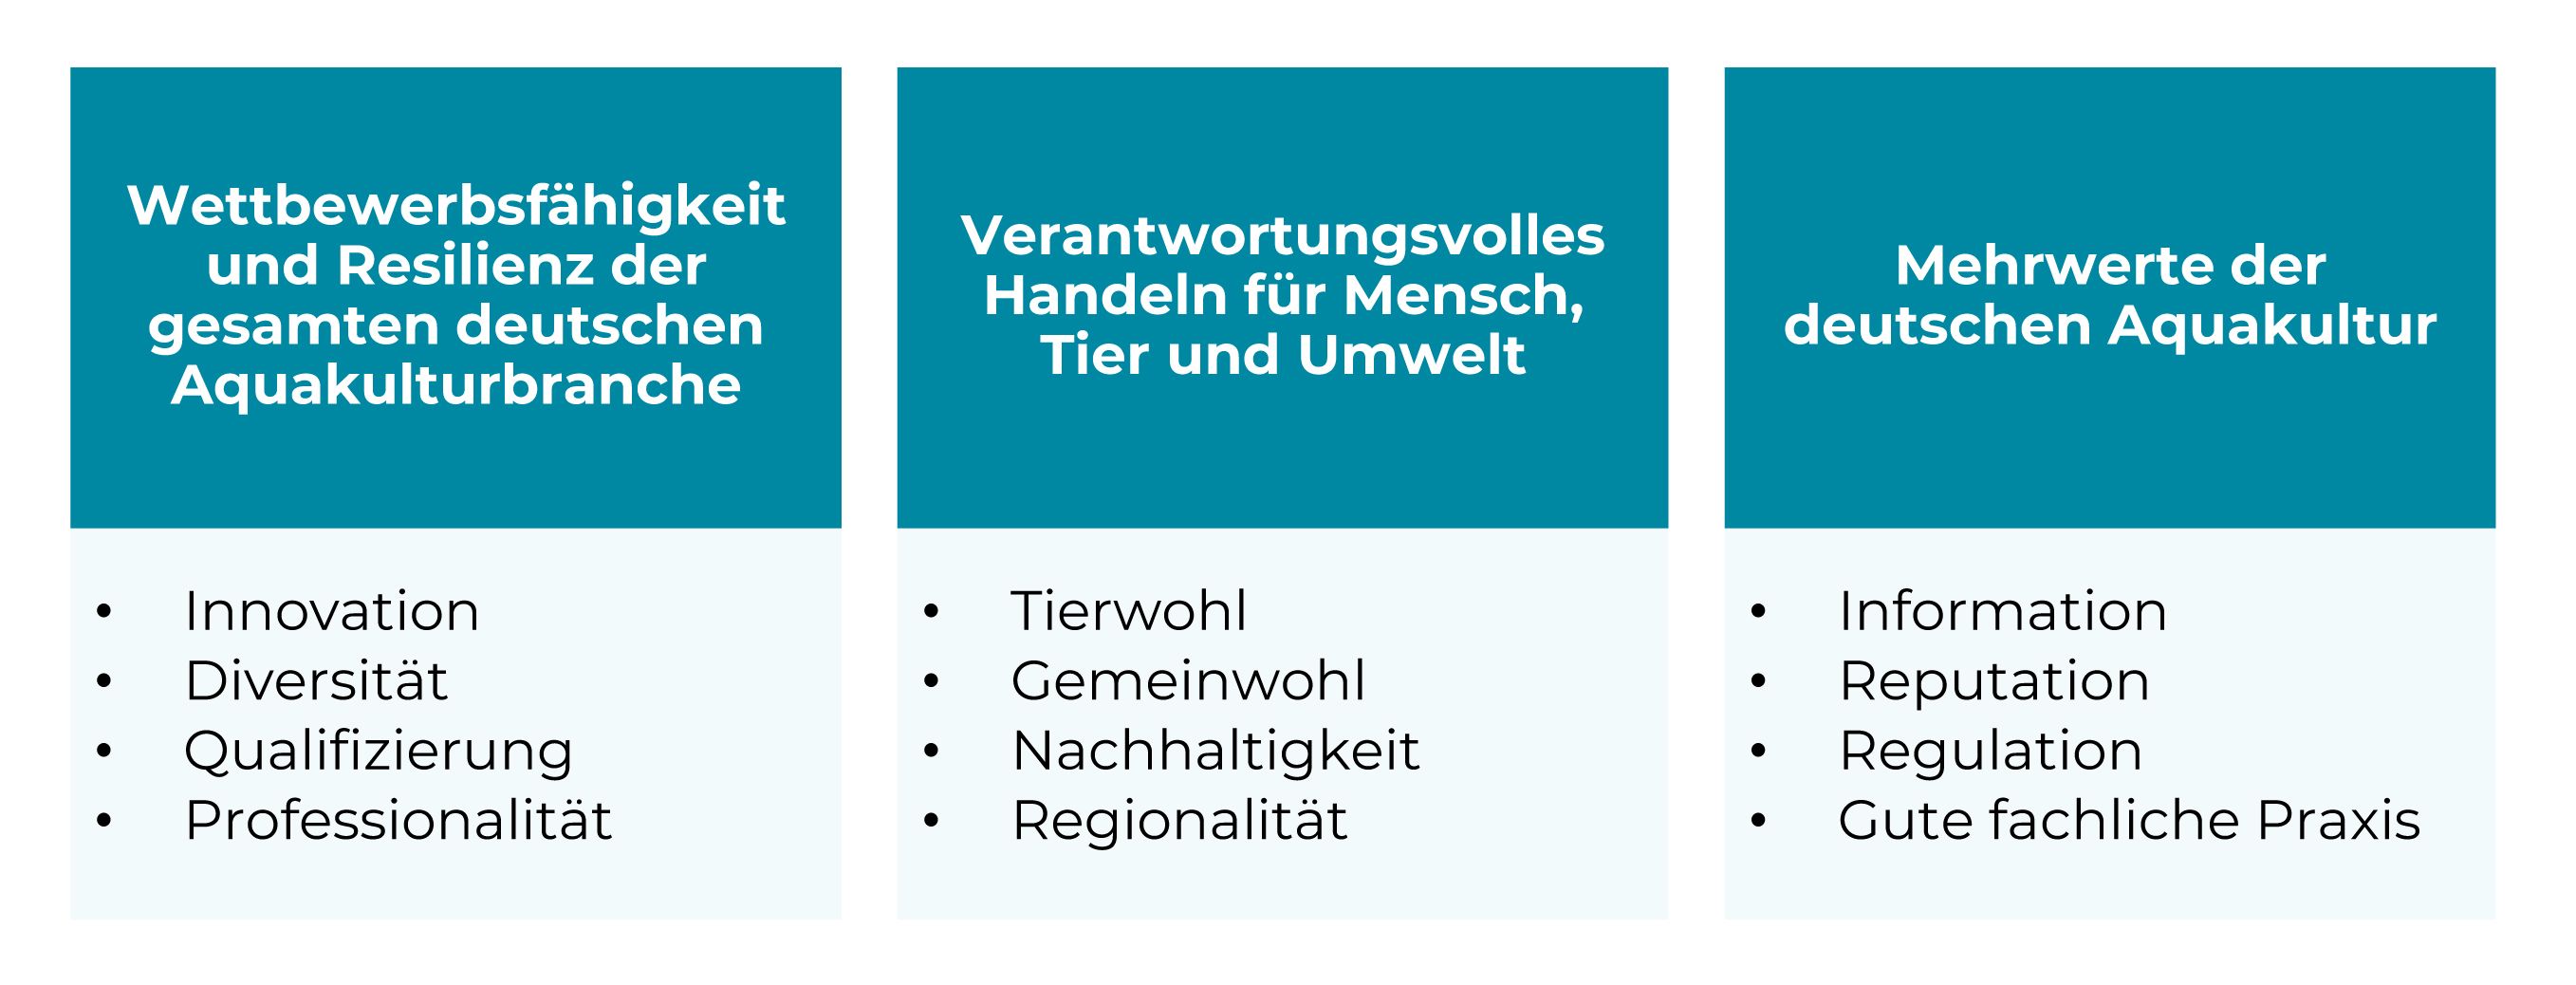 Leitbild des Bundesverband Aquakultur e.V.